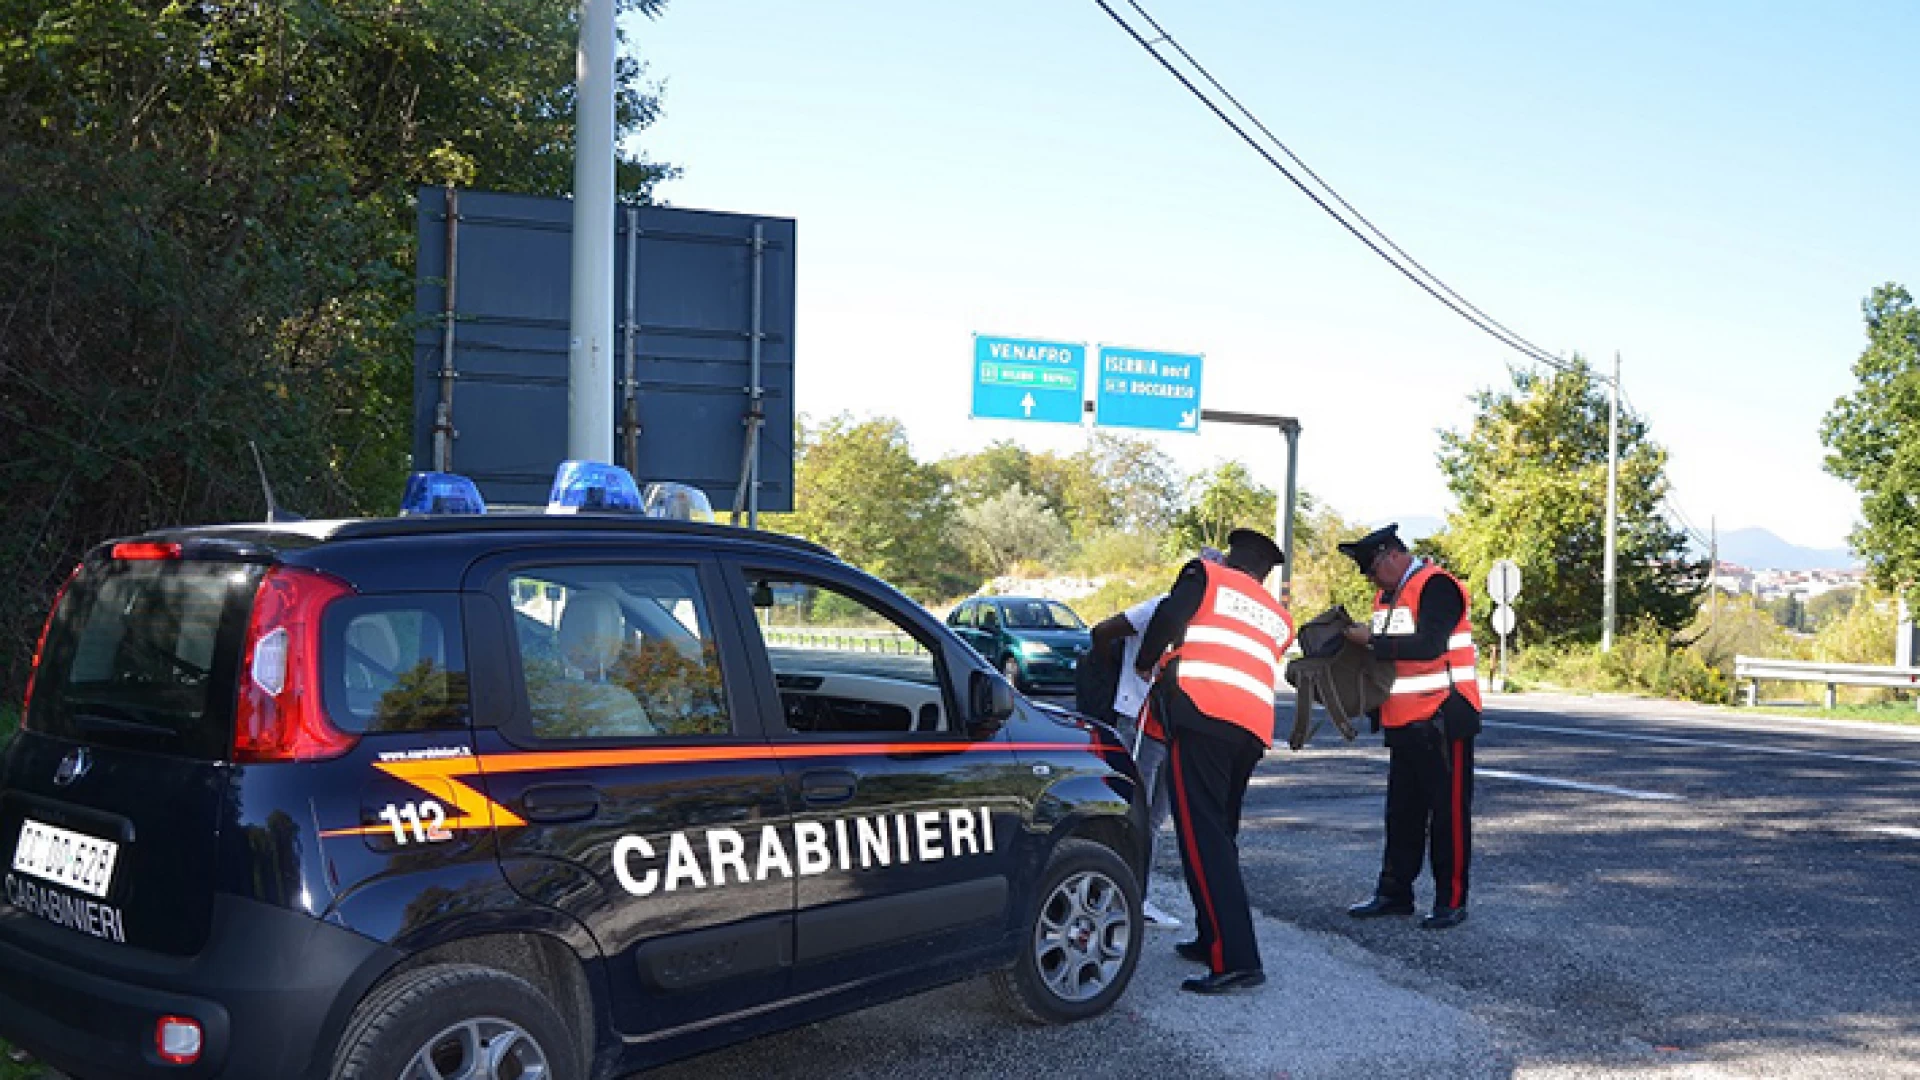 Isernia: Carabinieri in azione. Sanzionati cittadini per guida in stato di ebrezza e non rispetto delle normative Anti-Covid.